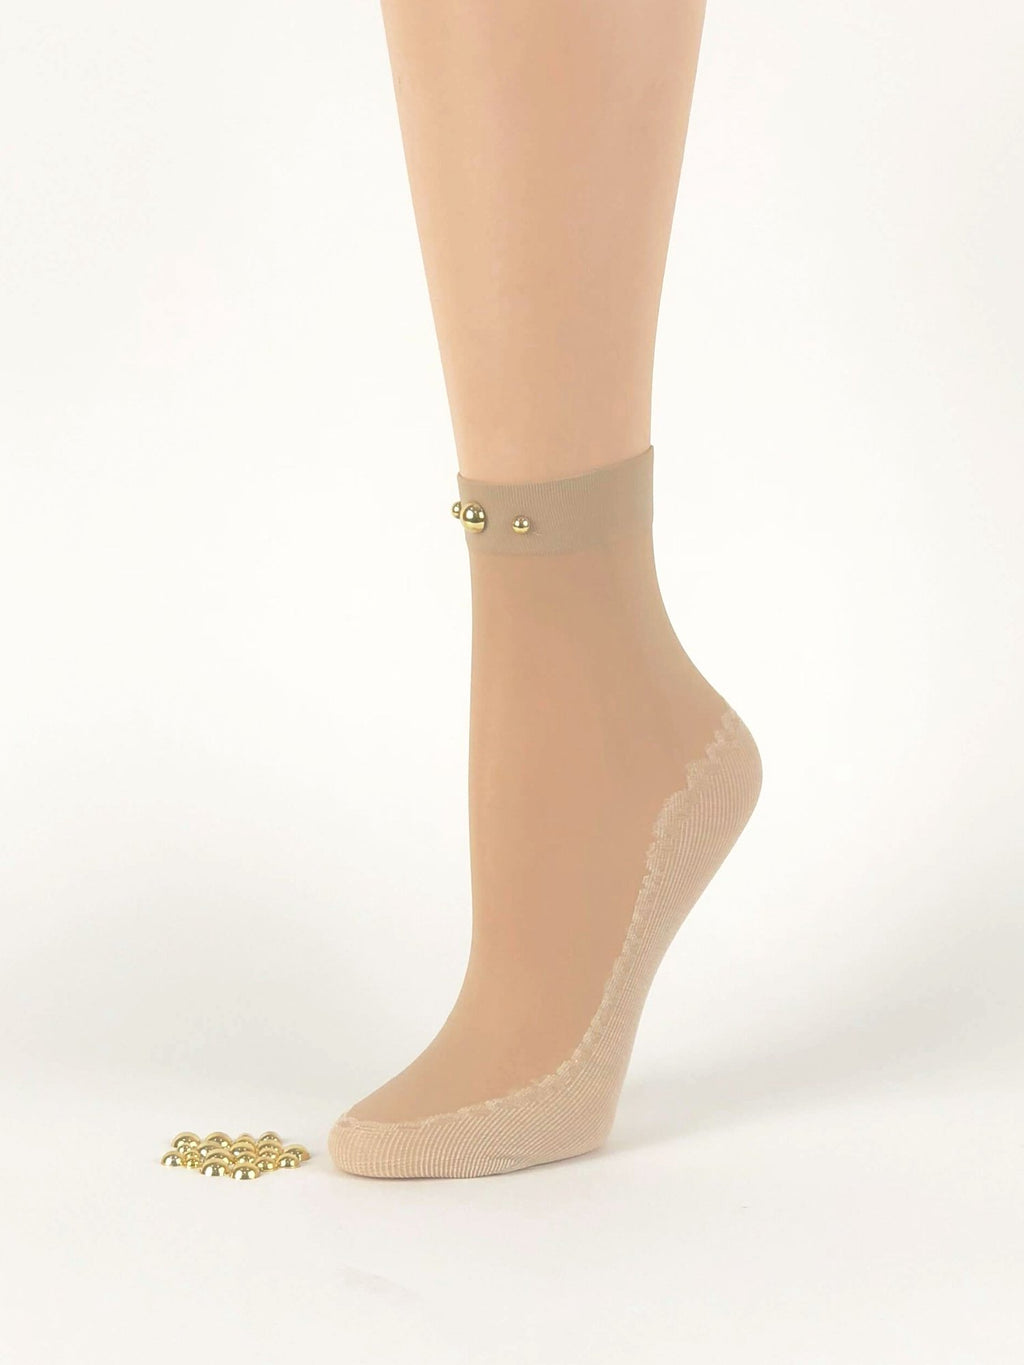 Simple Pearled Skin Sheer Socks - Global Trendz Fashion®